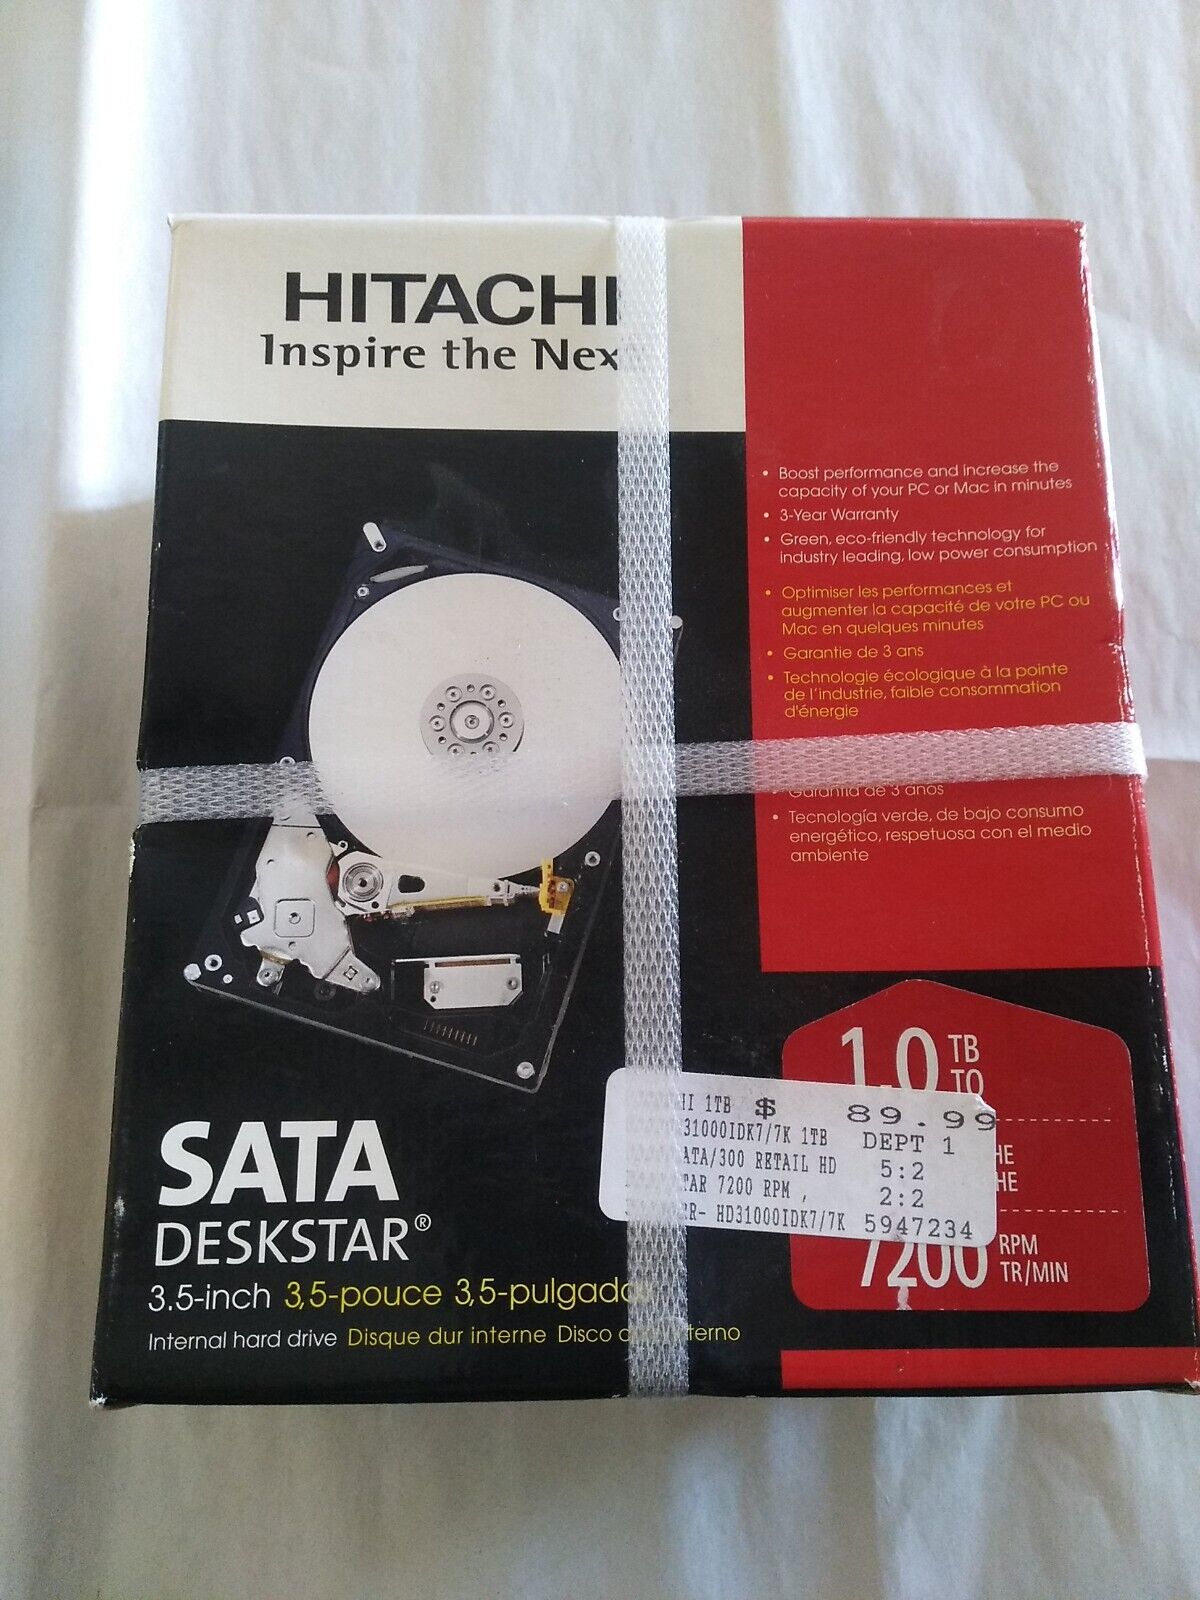 Hitachi Sata Deskstar